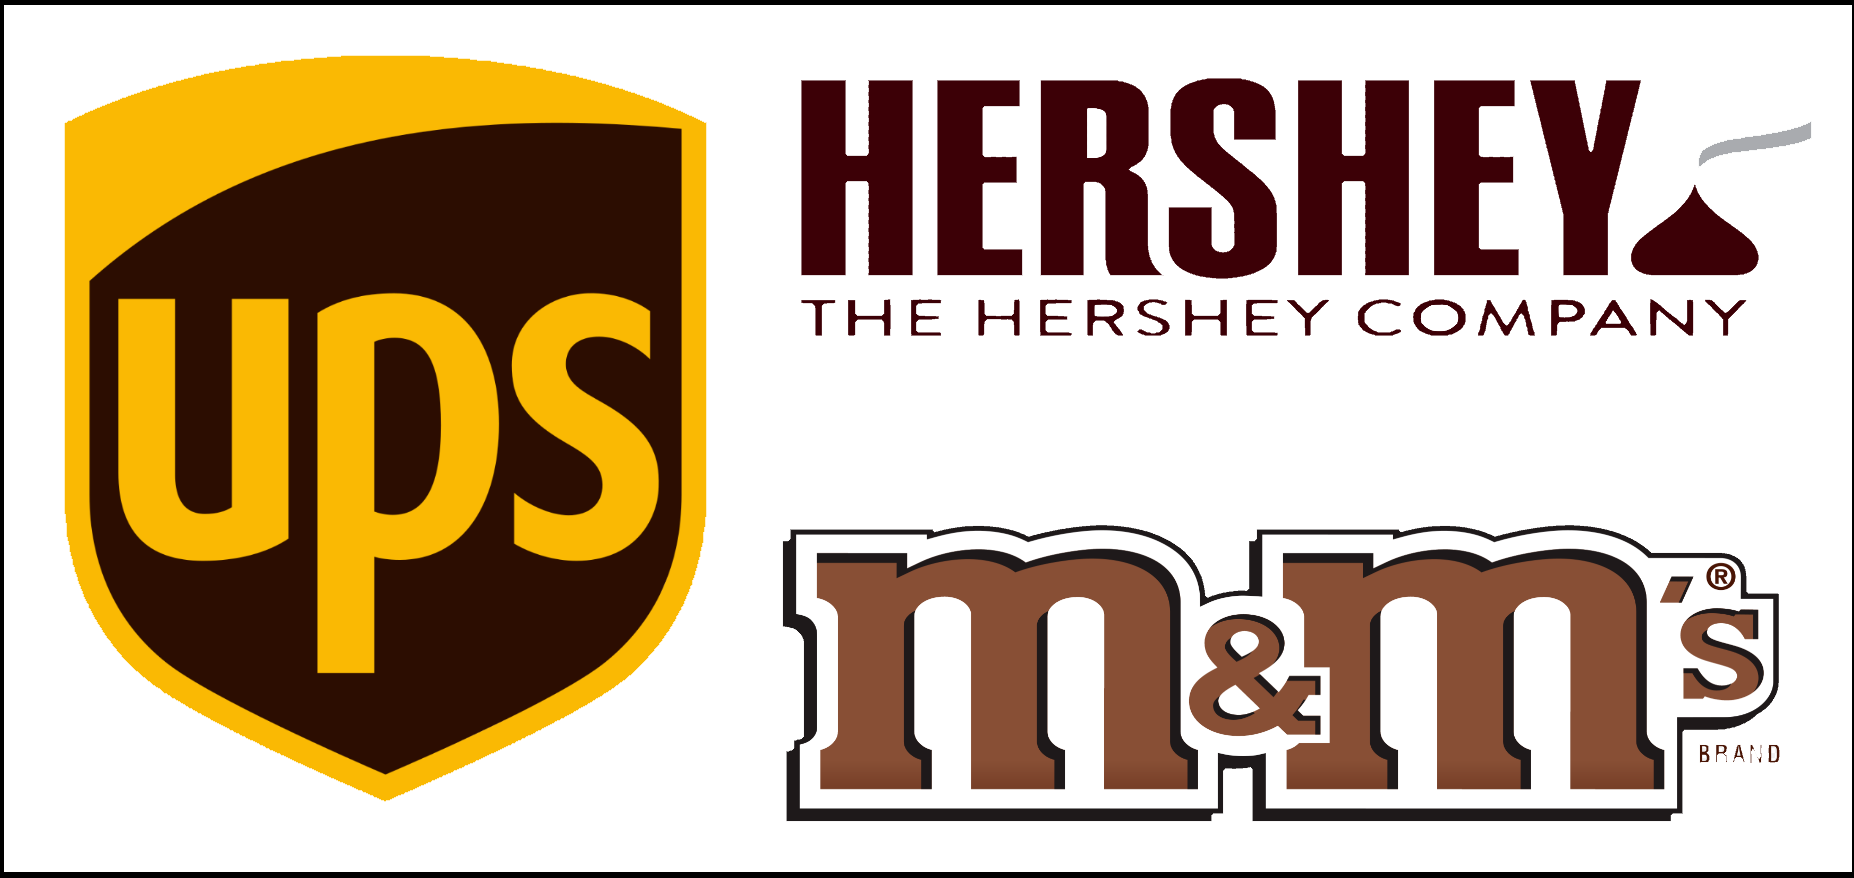 Sampling of brown logos